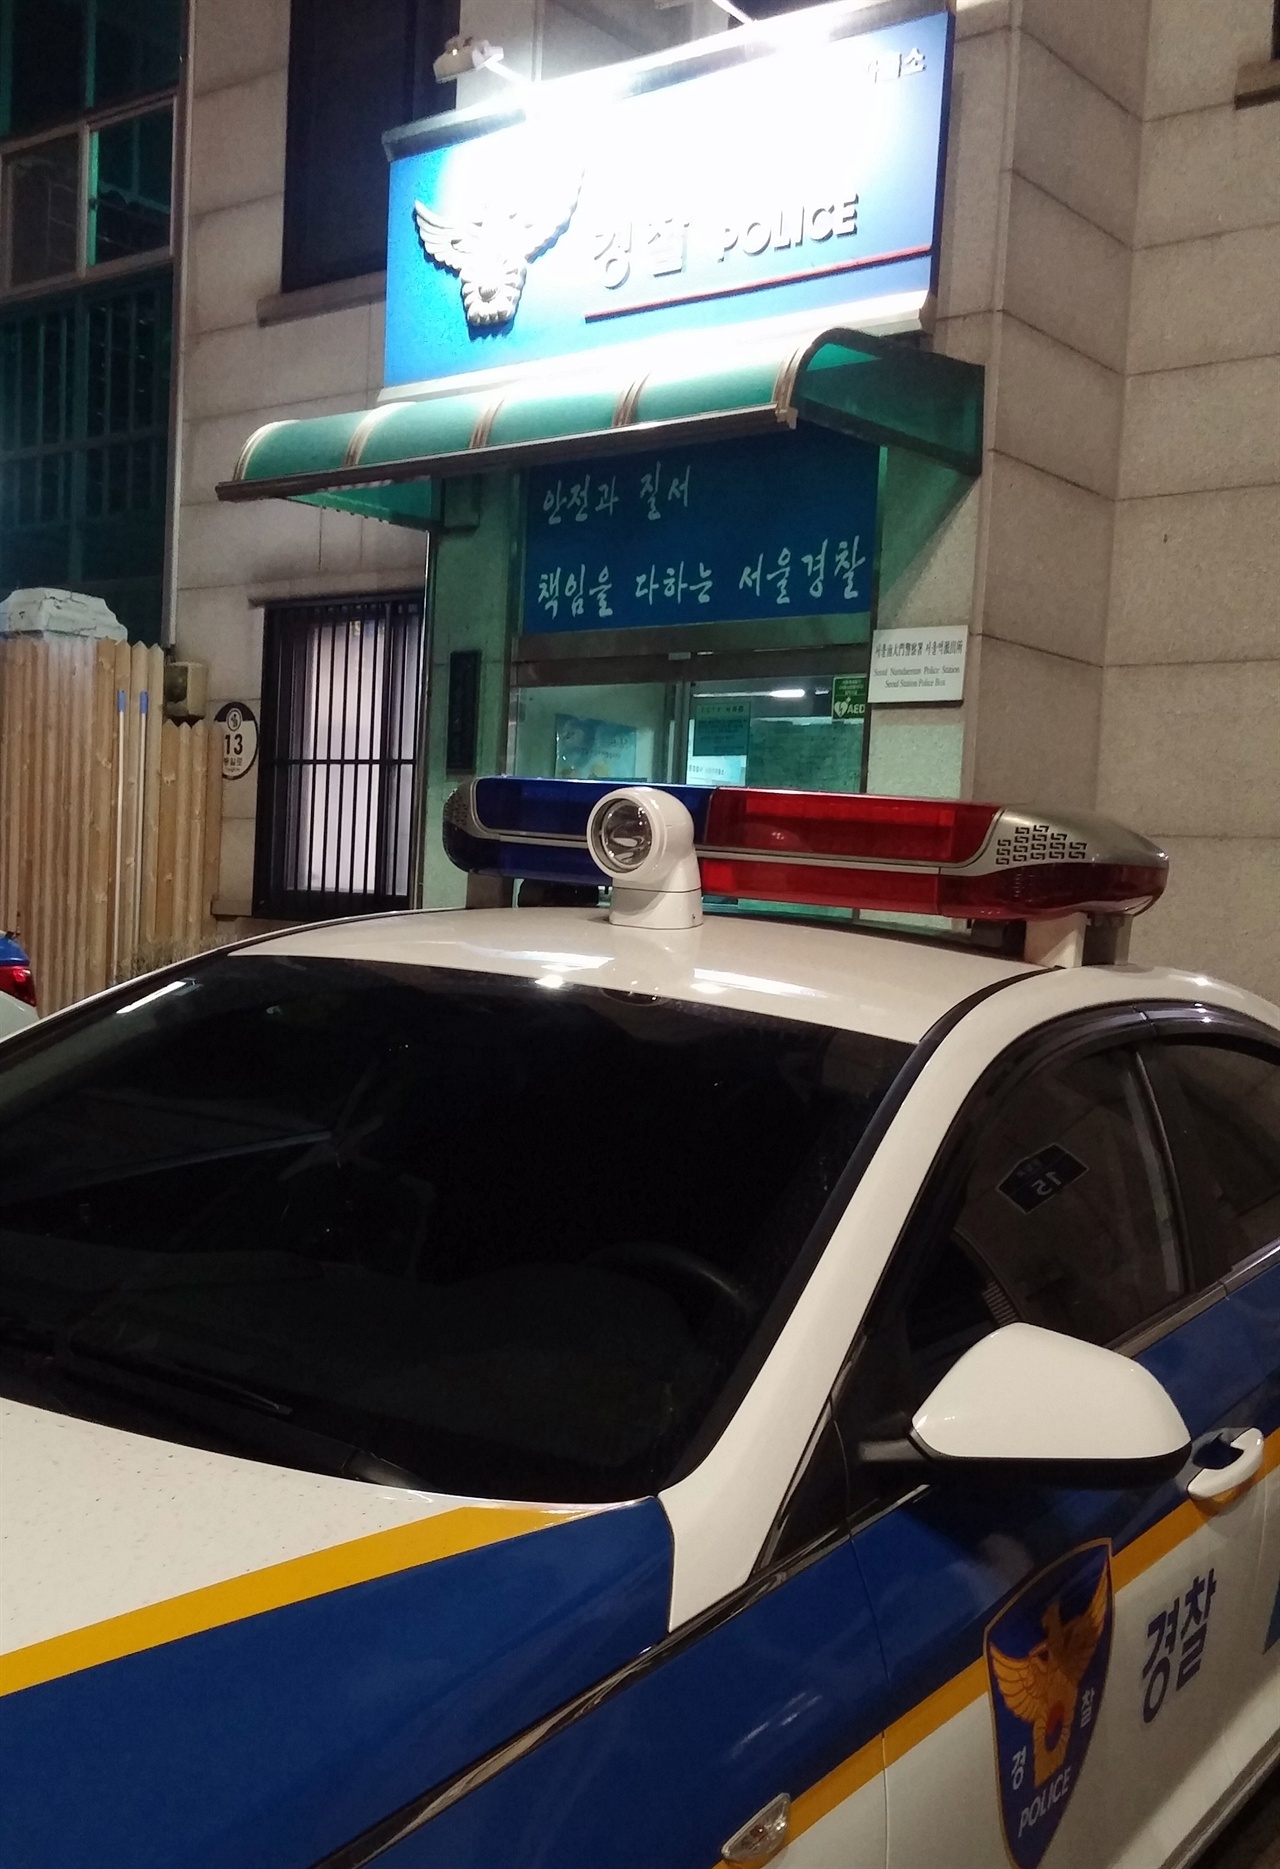 이석면(54?건설업)씨는 "동료의 폭행 피해 사실을 뒤늦게 알고 서울역파출소를 찾아갔는데 들어오지 못하게 해서 항의했더니 경찰이 업무방해죄로 체포하겠다면서 수갑까지 꺼냈다"고 경찰의 고압적인 태도에 항의했다.